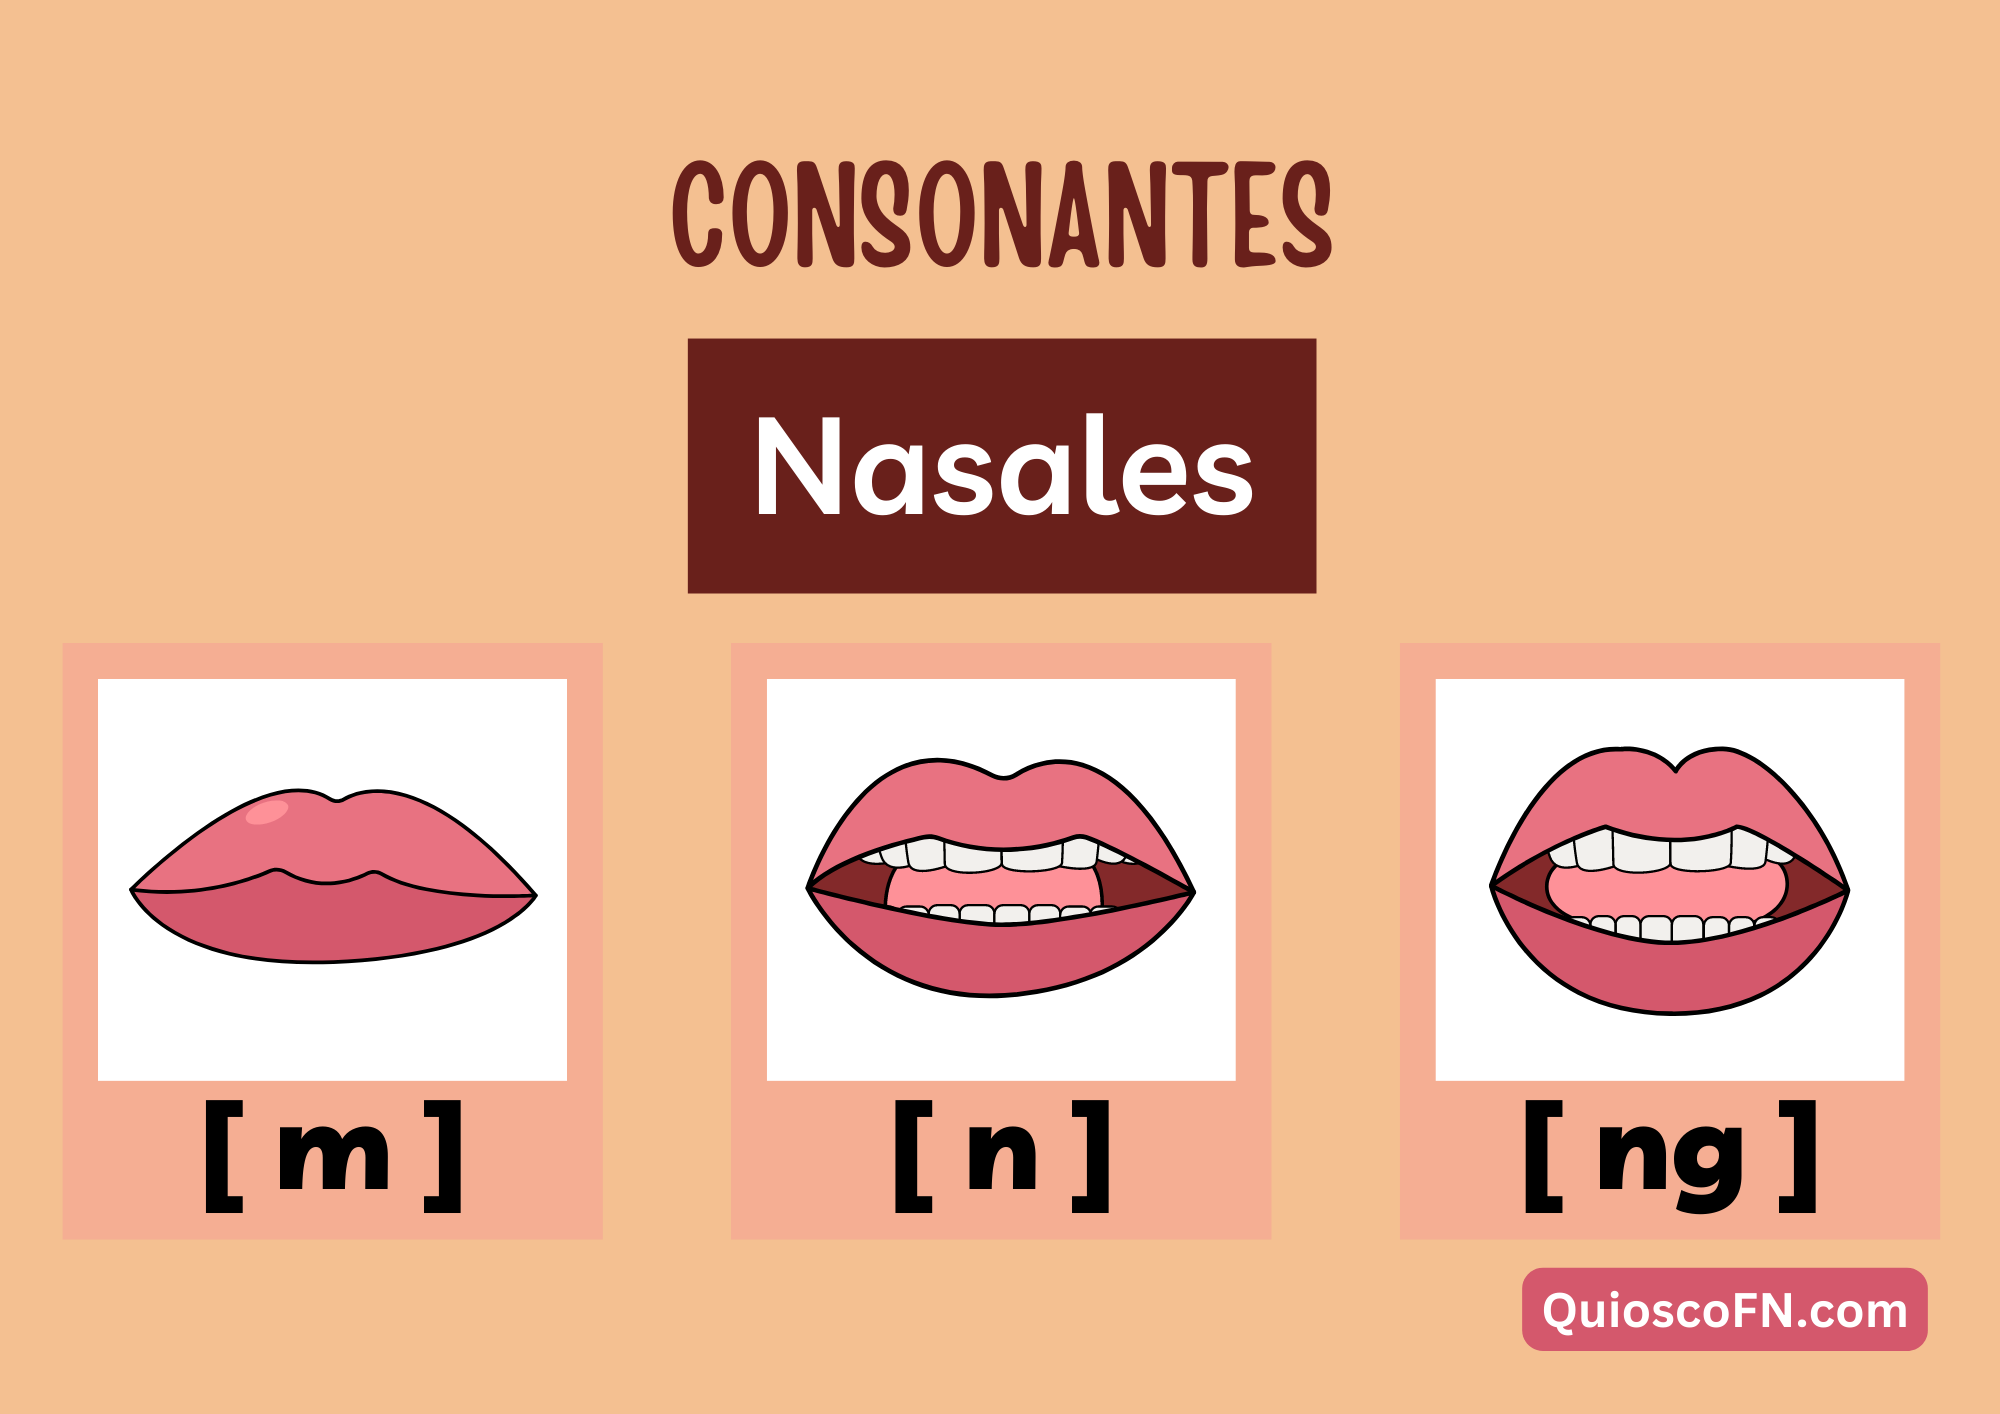 Las consonantes nasales del inglés estadounidense son sonidos producidos al permitir que el aire fluya a través de la cavidad nasal mientras se obstruye el paso del aire por la boca. Estos sonidos se articulan al bajar el velo del paladar para permitir que el aire pase a través de la nariz. Las consonantes nasales más comunes en el inglés estadounidense son [m], [n] y [ŋ].

La consonante nasal [m] se produce al cerrar los labios y dejar que el aire salga por la nariz, como en la palabra "mom" (mamá). La consonante nasal [n] se produce al colocar la punta de la lengua detrás de los dientes superiores y dejar que el aire fluya por la nariz, como en la palabra "nine" (nueve). Y la consonante nasal [ŋ] se produce al levantar el dorso de la lengua hacia el velo del paladar y permitir que el aire pase por la nariz, como en la palabra "sing" (cantar). Estas consonantes nasales añaden una calidad nasal distintiva a la pronunciación de las palabras en inglés estadounidense.